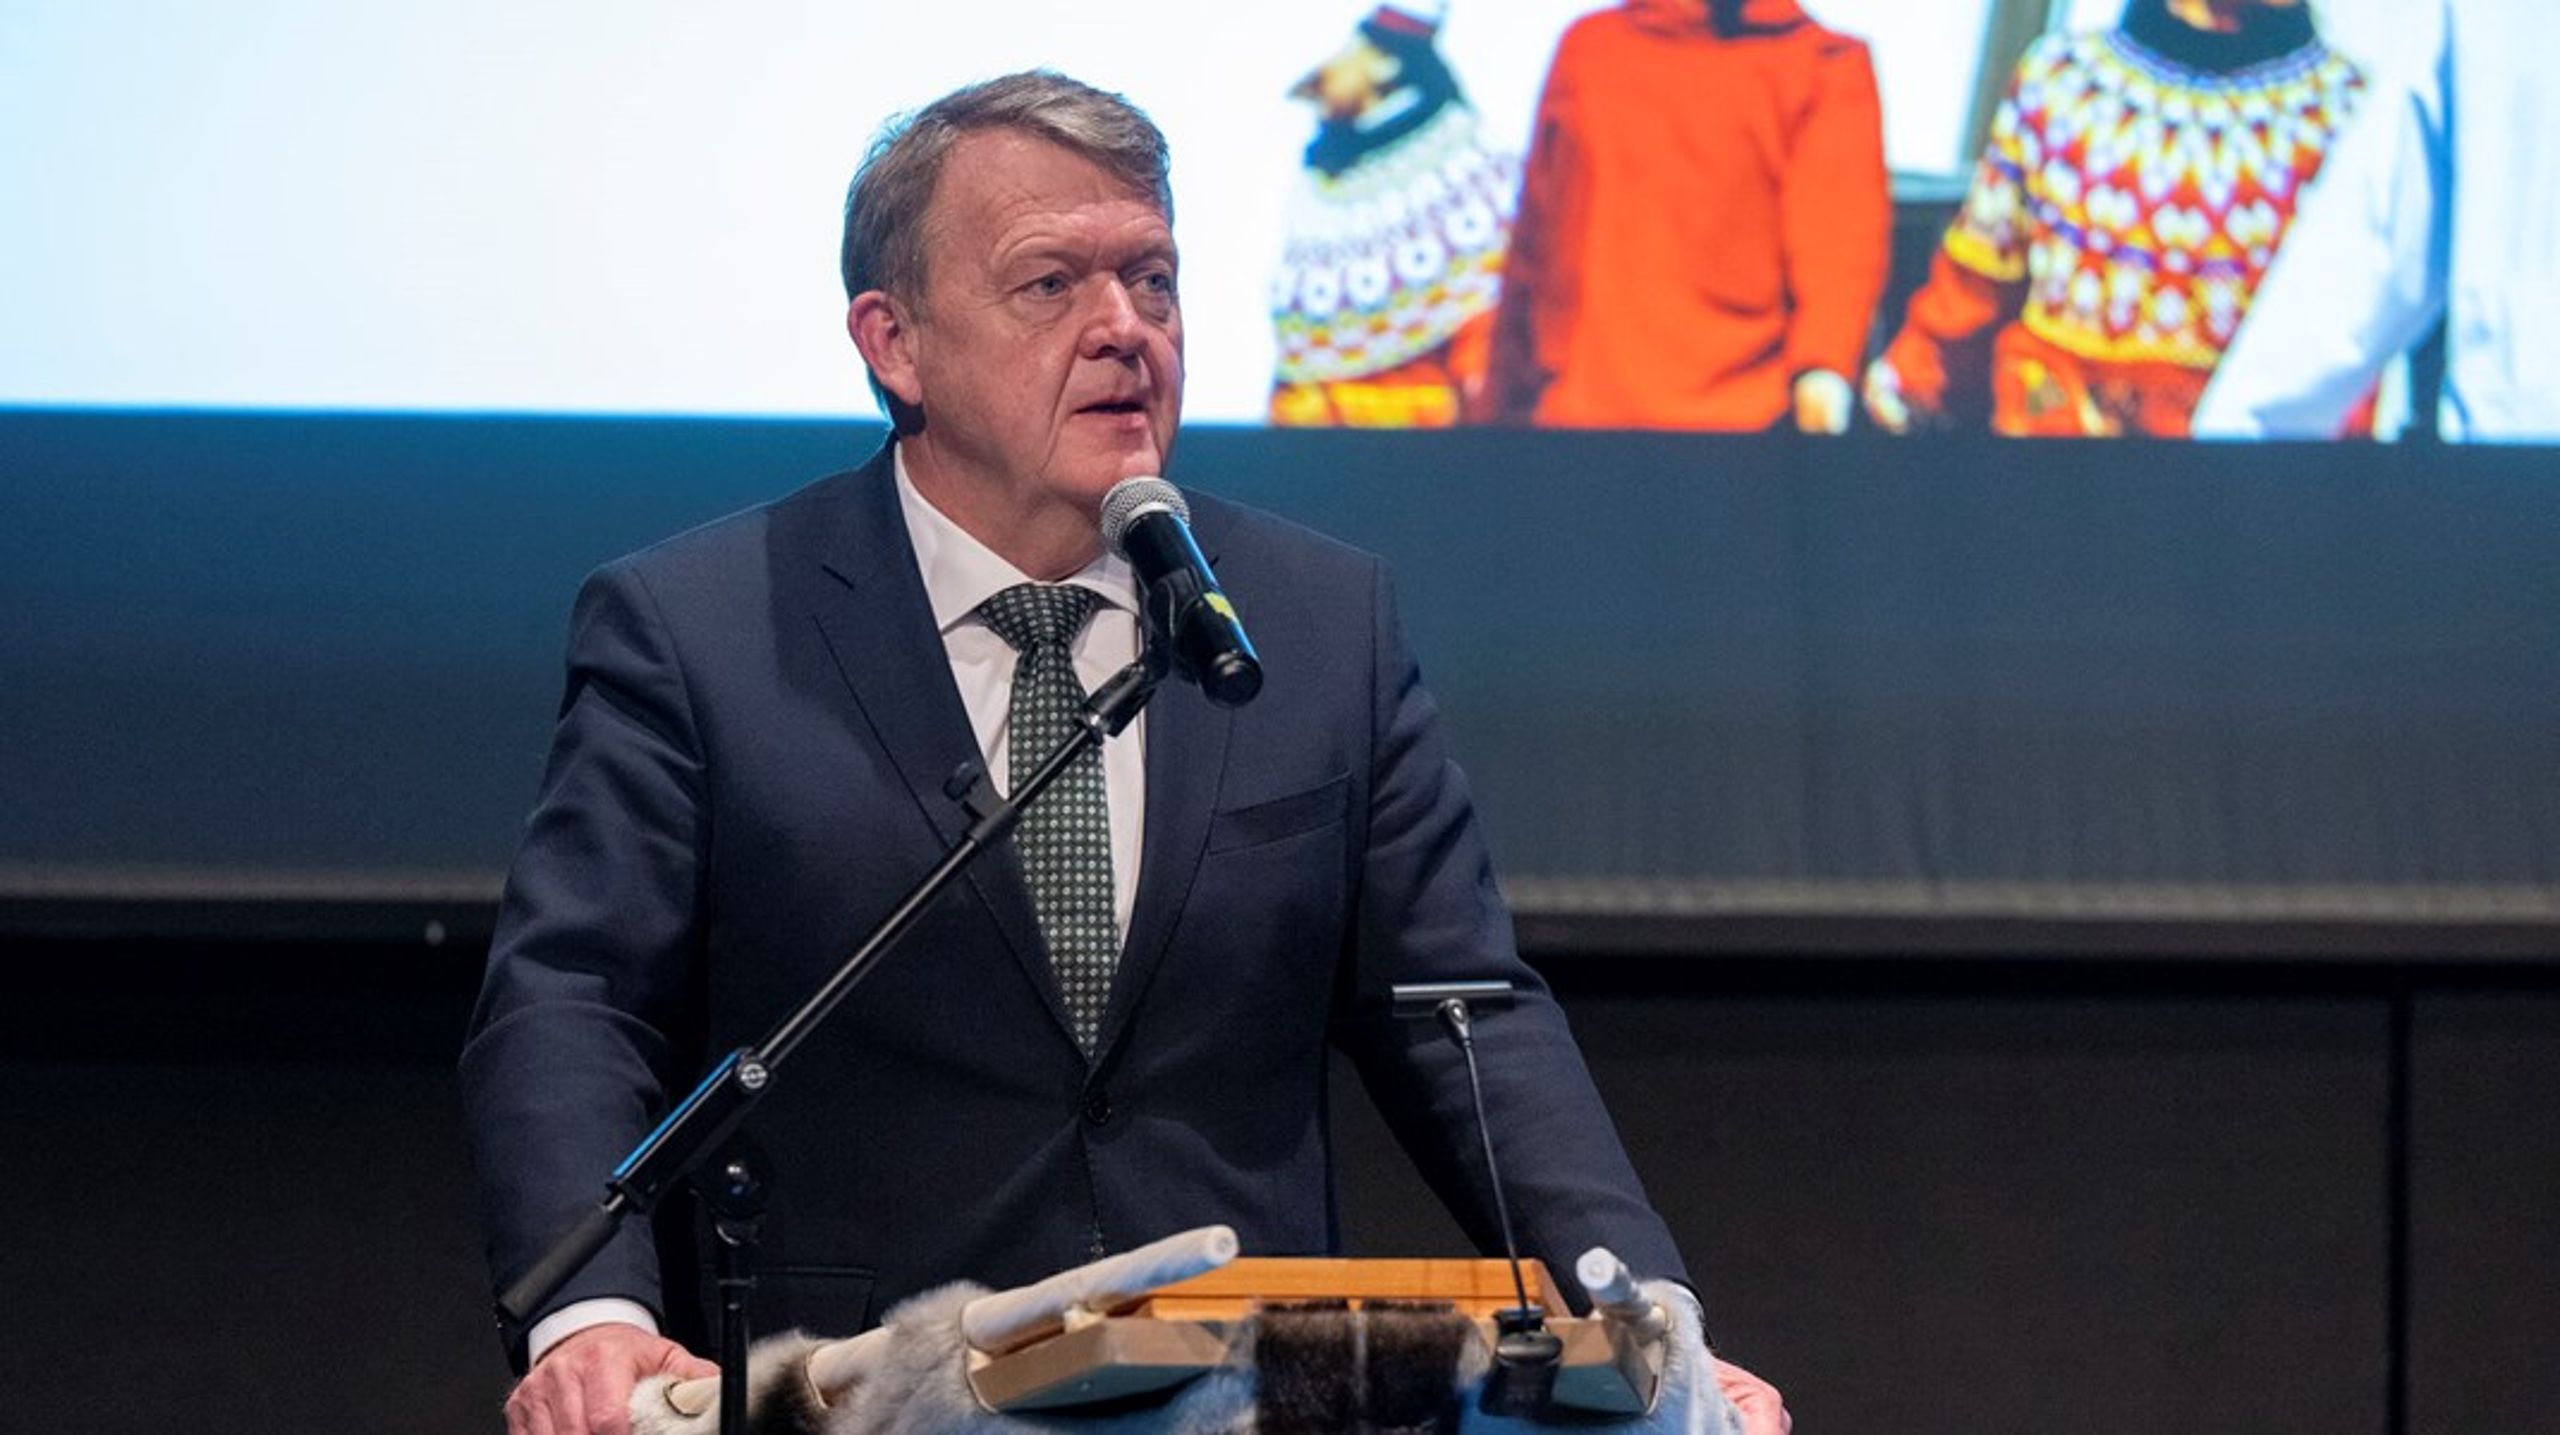 Danmarks udenrigsminister Lars Løkke Rasmussen (M) på talerstolen ved EU-konferencen i Nuuk onsdag.